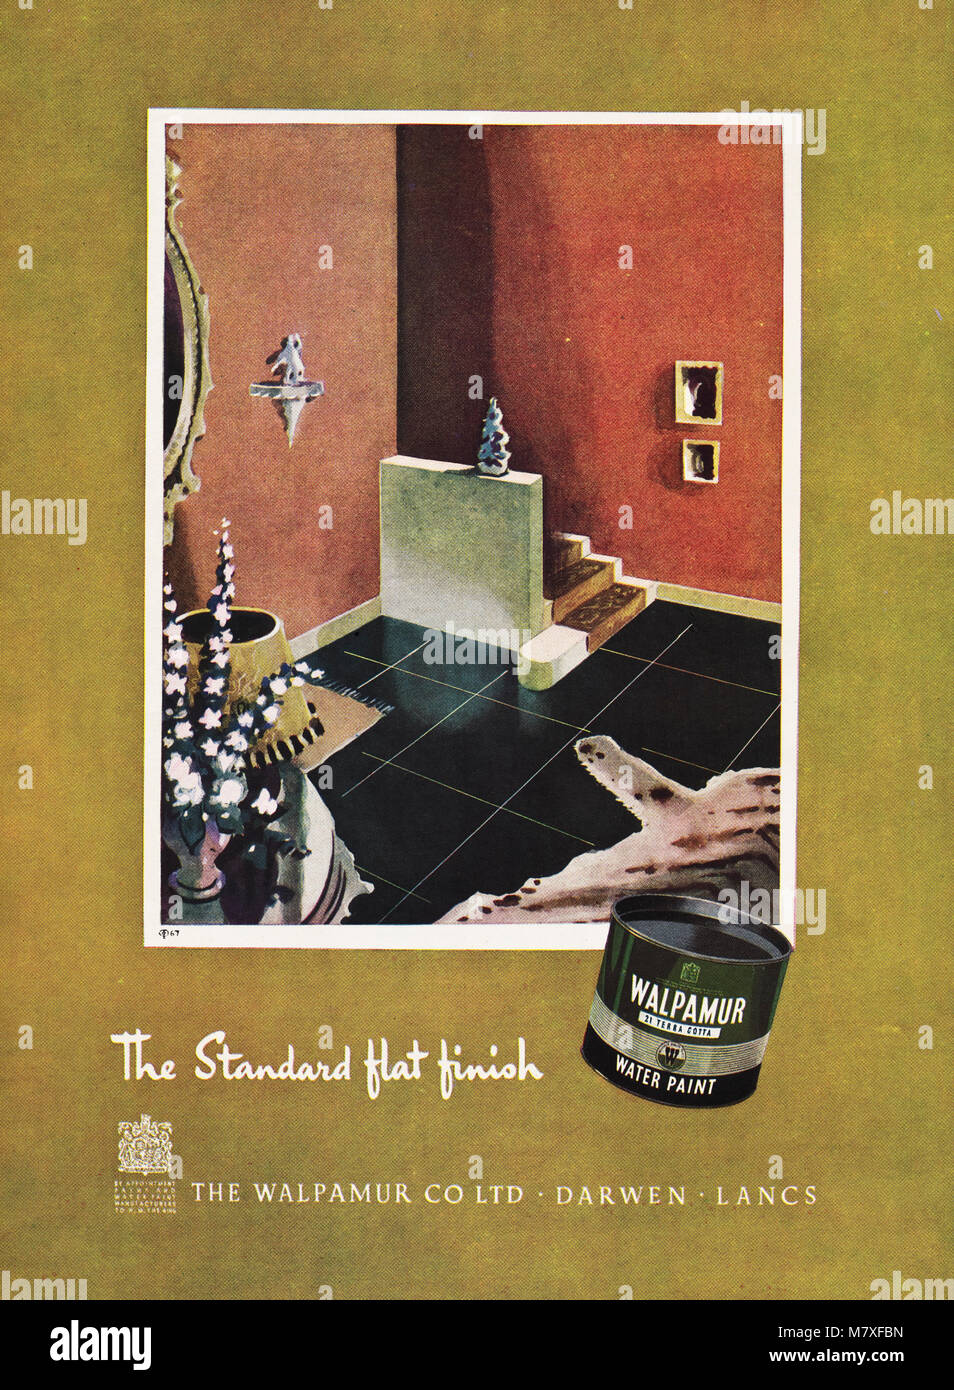 Anni Cinquanta originale vecchia vintage pubblicità pubblicità Walpamur vernice ad acqua di Darwen Lancashire England Regno Unito nella rivista del 1950 circa Foto Stock